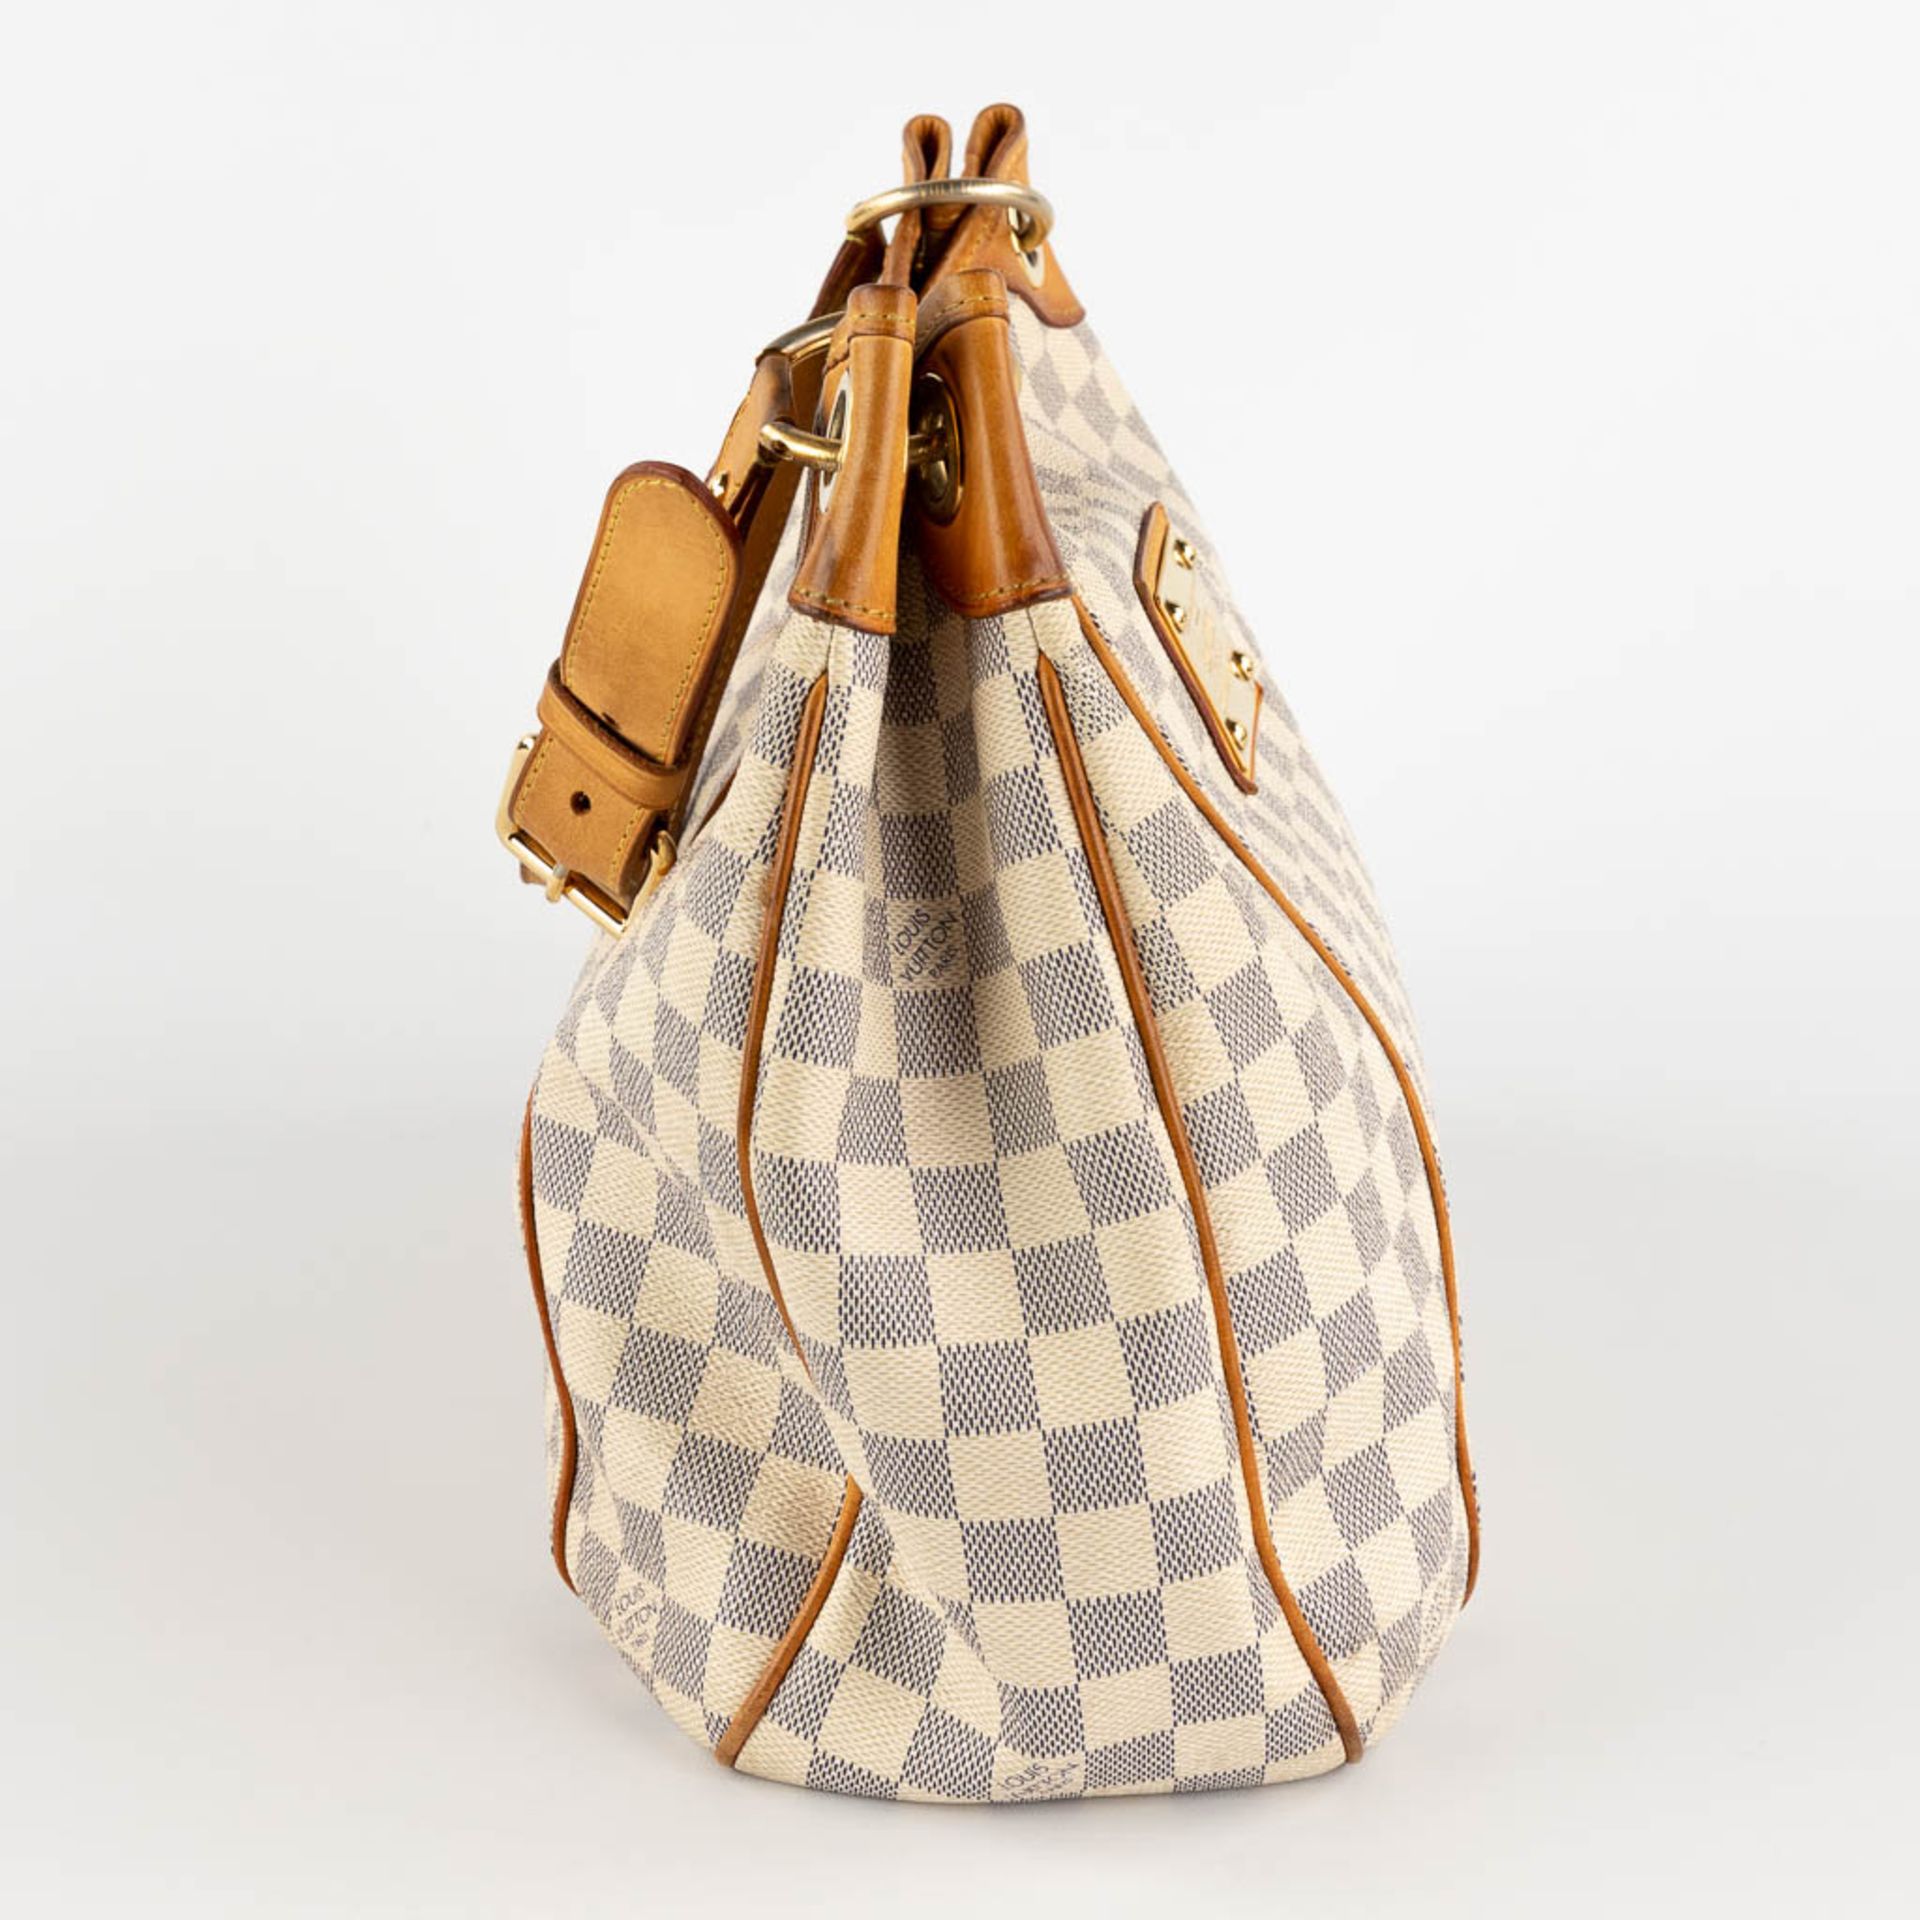 Louis Vuitton, Galleria, a handbag made of Damier Azur. (W:39 x H:30 cm) - Image 7 of 18